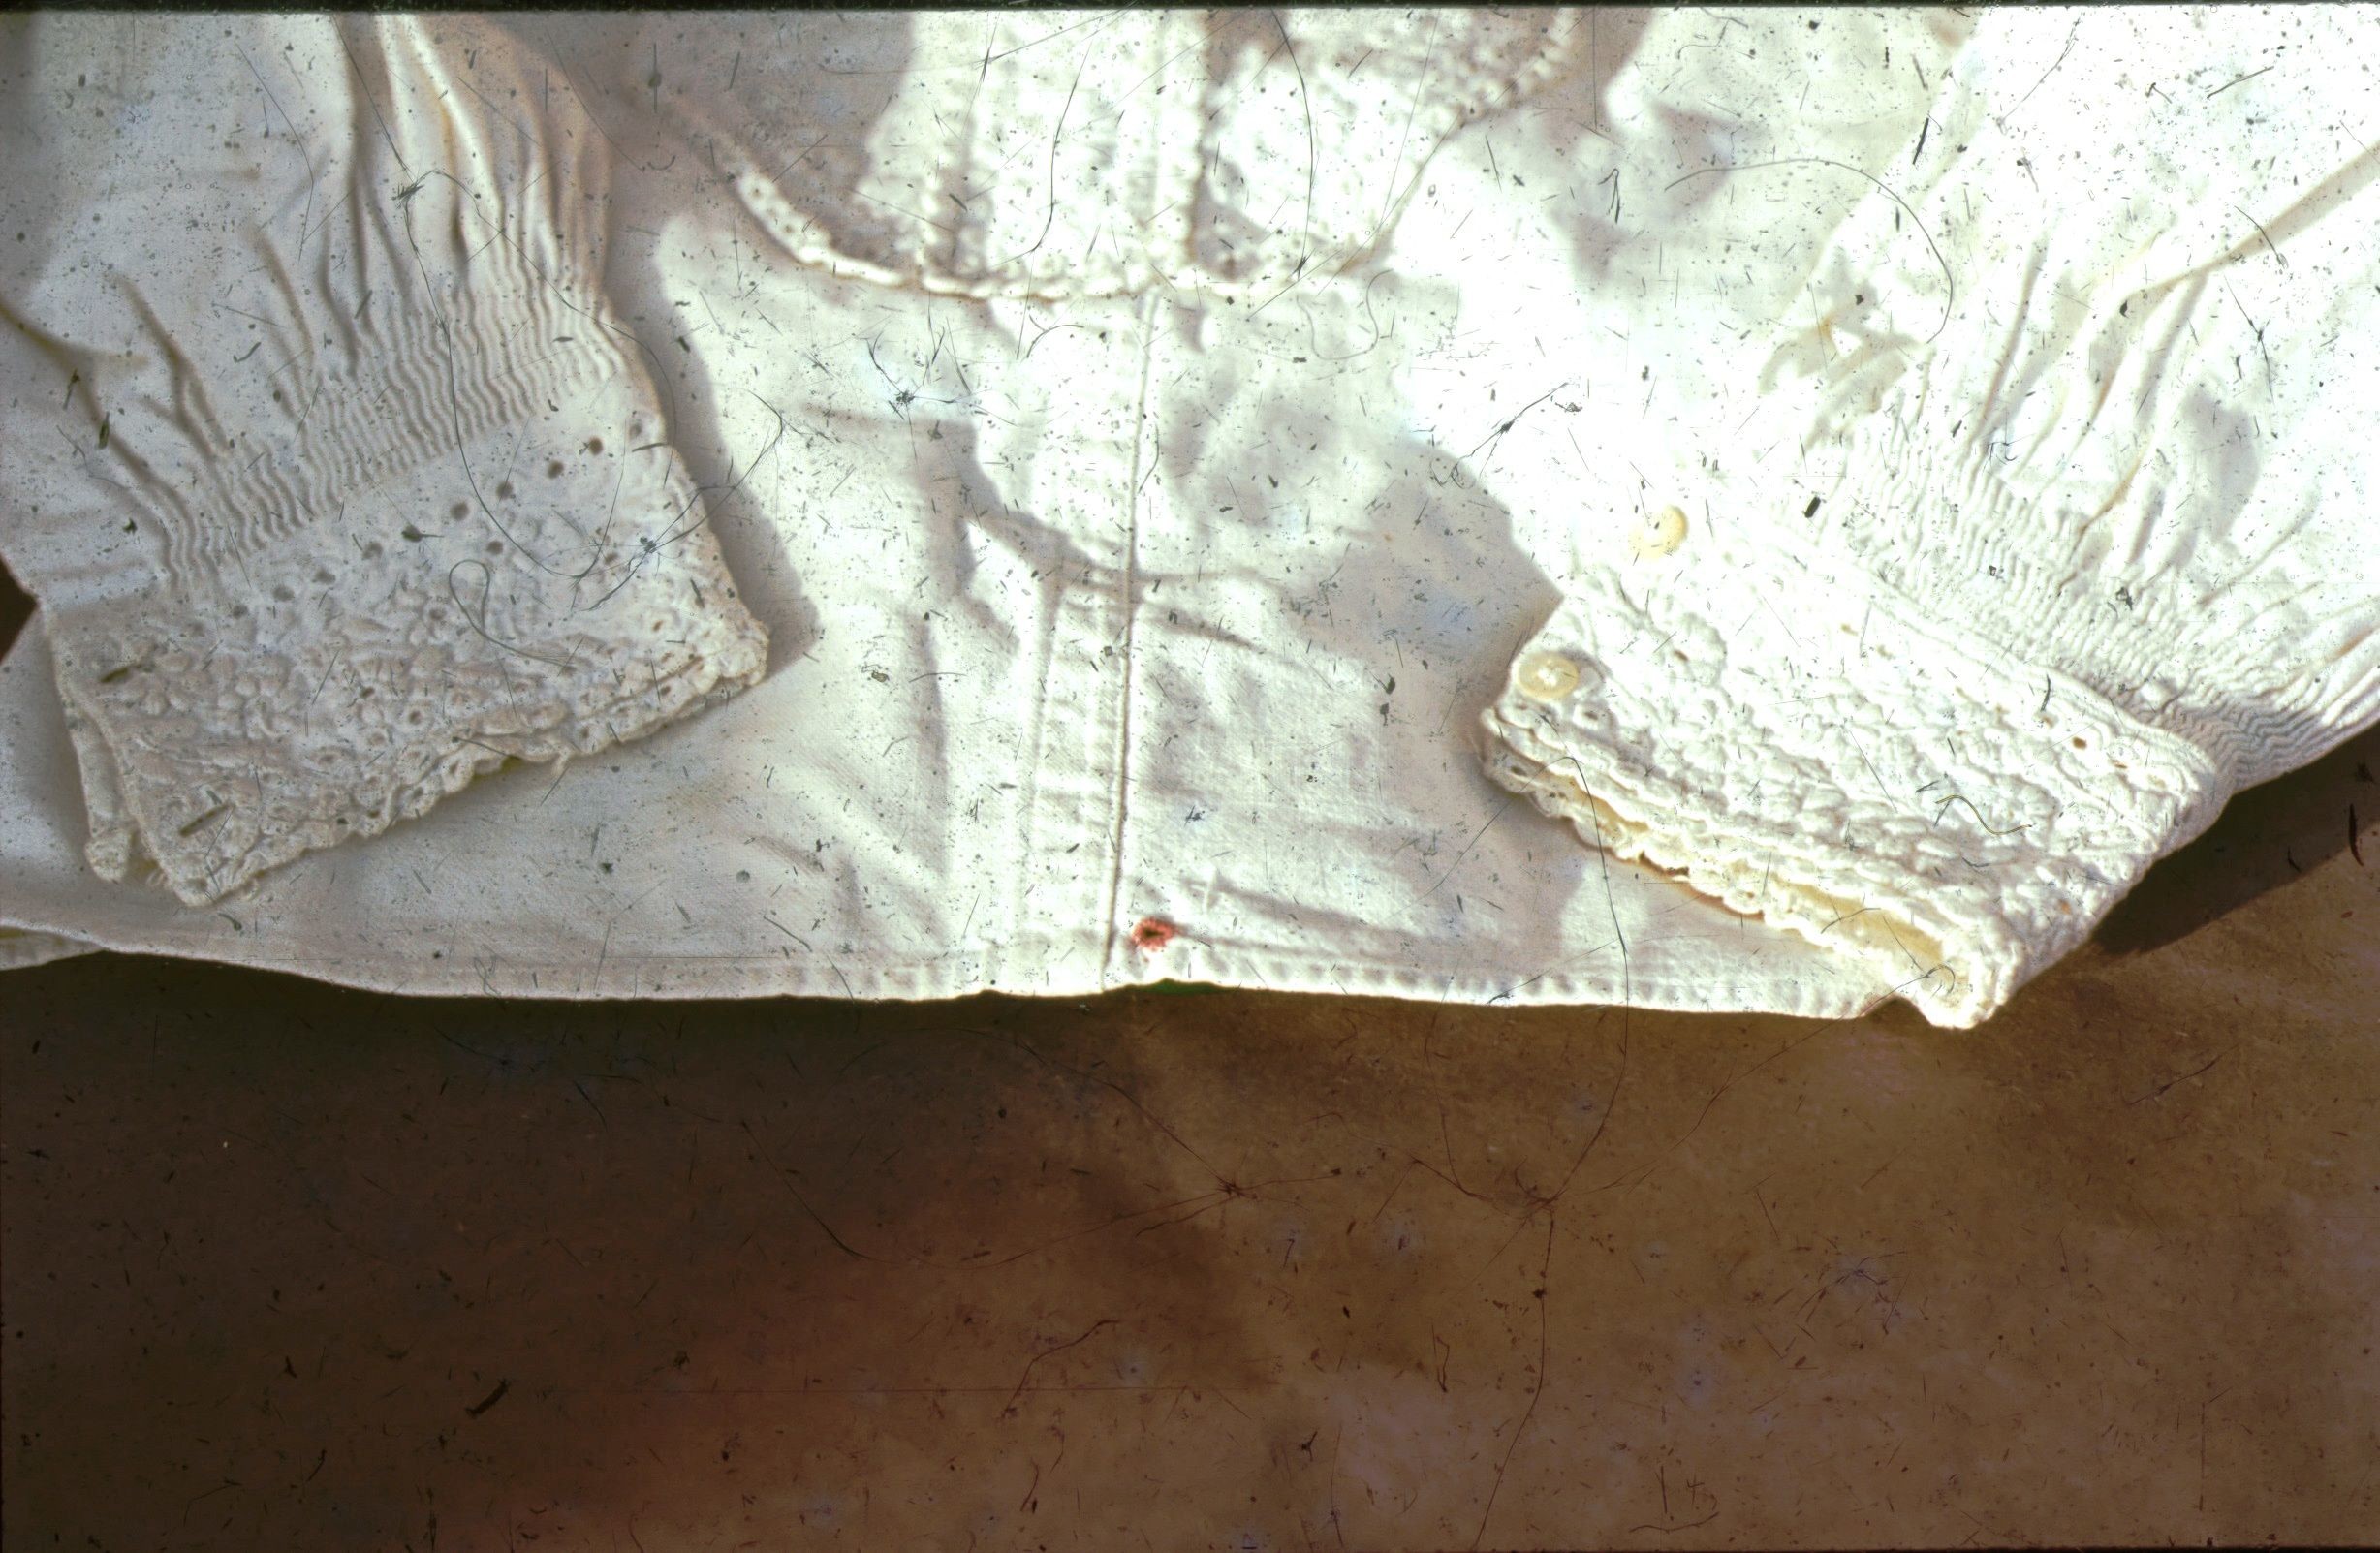 Törökkopányi fehérhímzéses férfi ing, fém gombokkal. (Rippl-Rónai Múzeum CC BY-NC-ND)